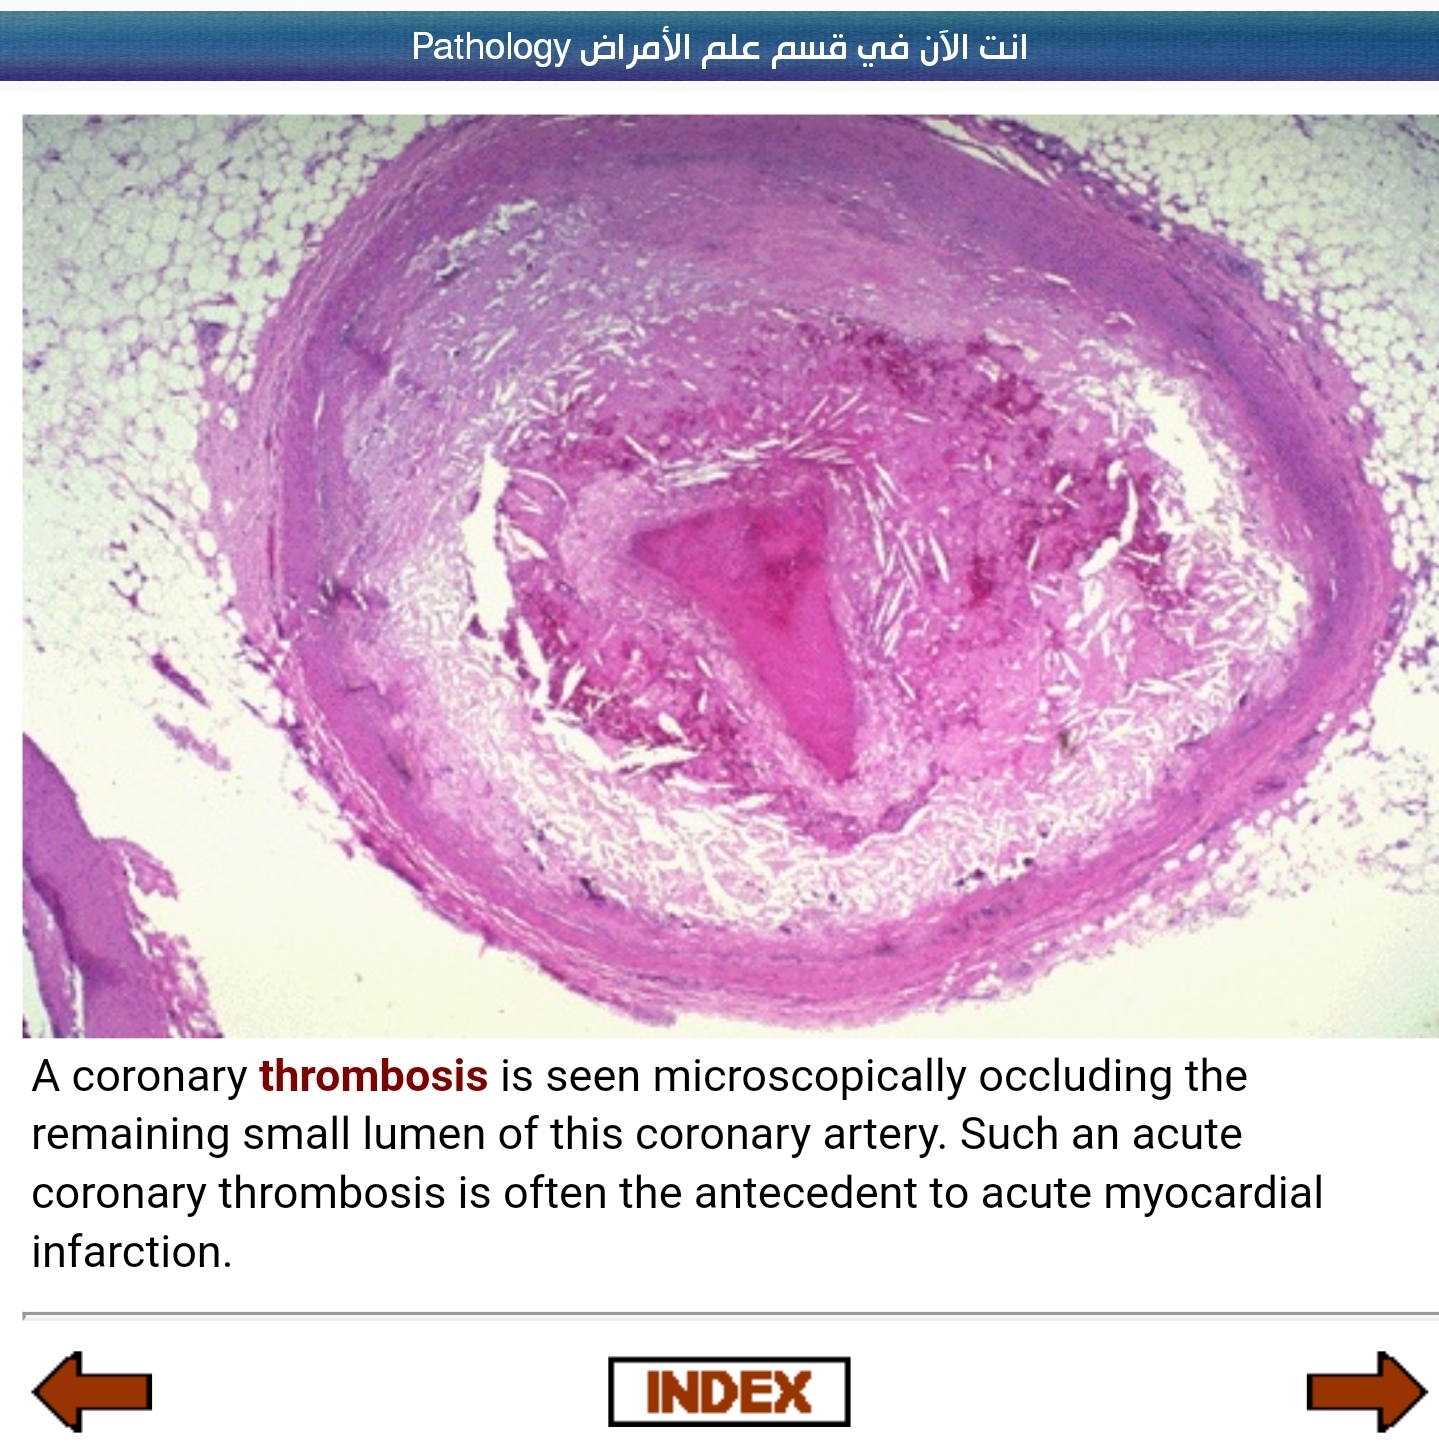 Сердечный тромбоз. Атеросклероз аорты микропрепарат. Стенозирующий атеросклероз венечной артерии микропрепарат. Атеросклеротическая бляшка микропрепарат. Атеросклероз коронарных артерий макропрепарат.